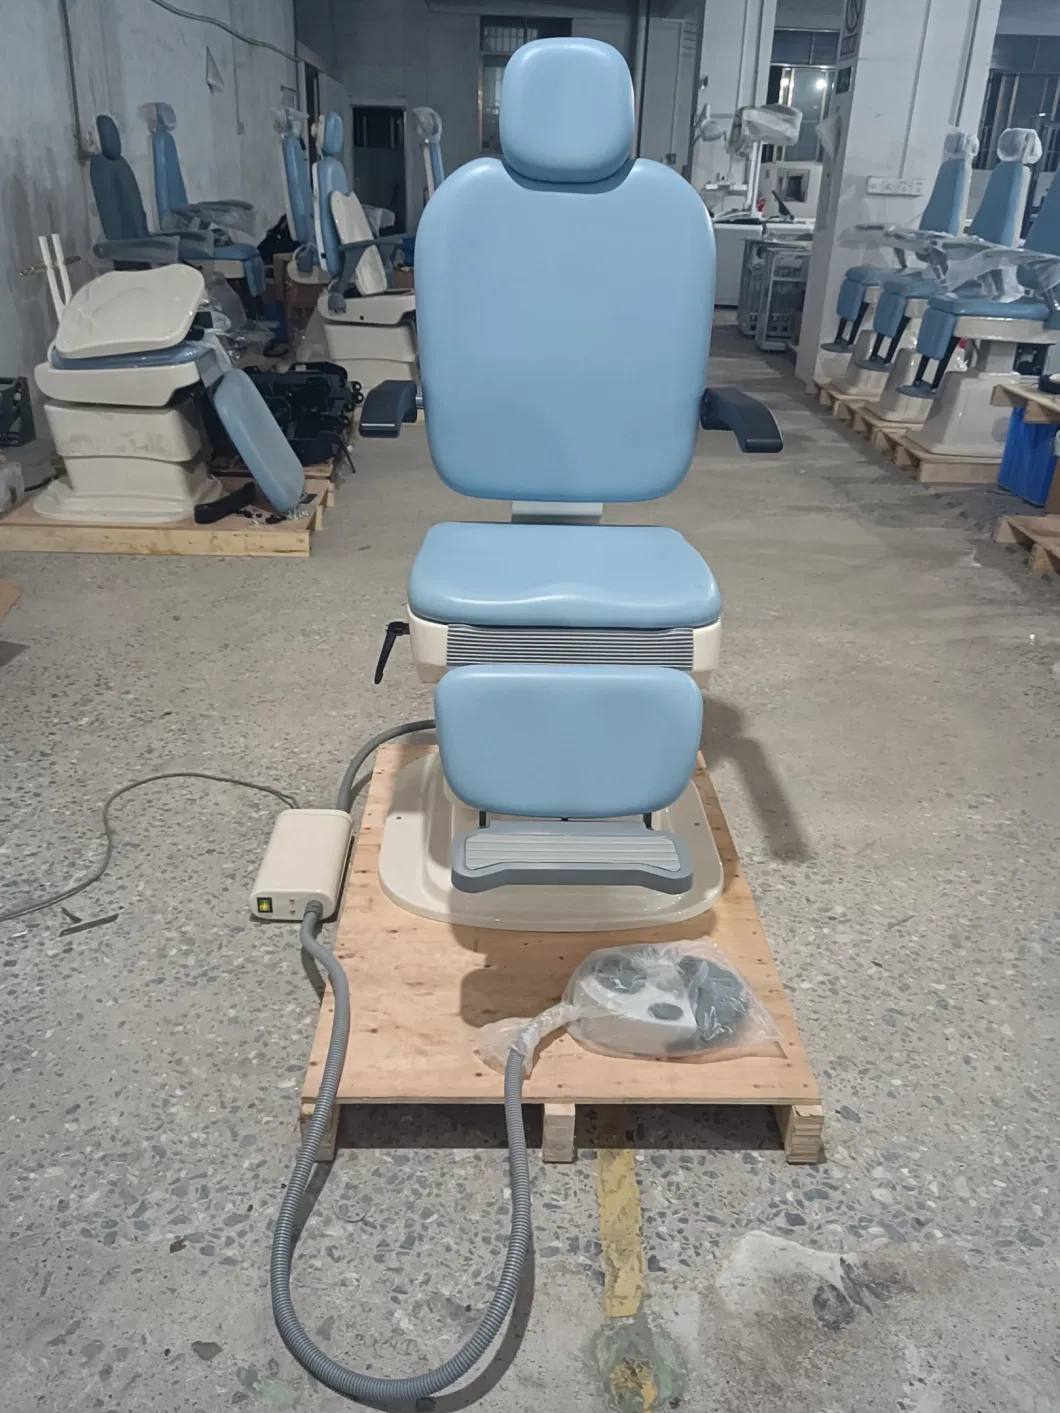 Automatic Ent Patient Chair Ent Chair 180 Degree Rotation Ent Unit Patient Chair